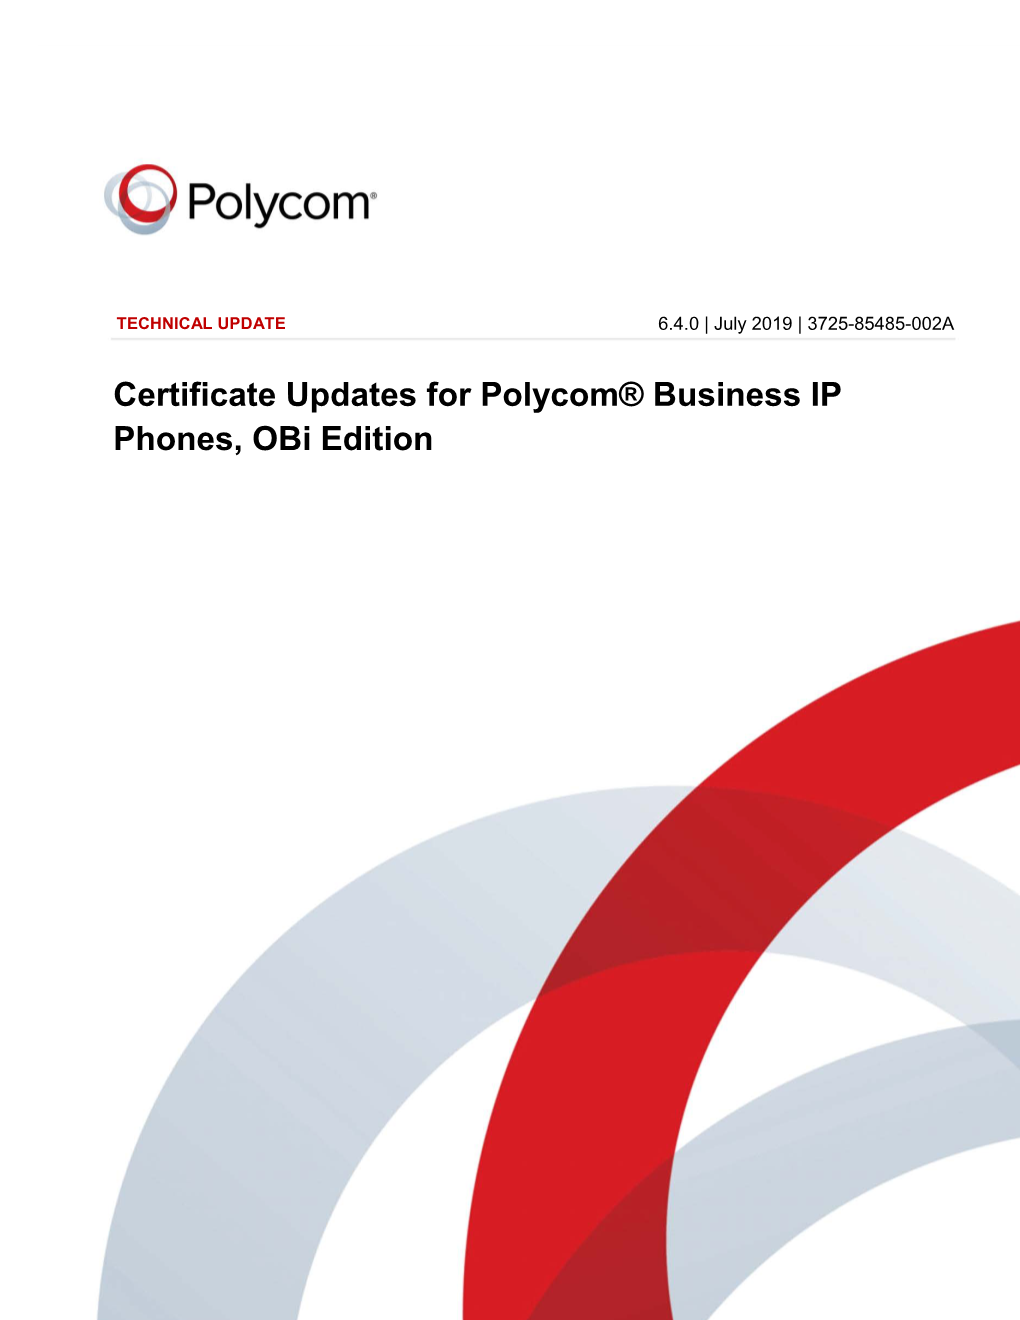 Cerificate Updates for Polycom Obi Edition